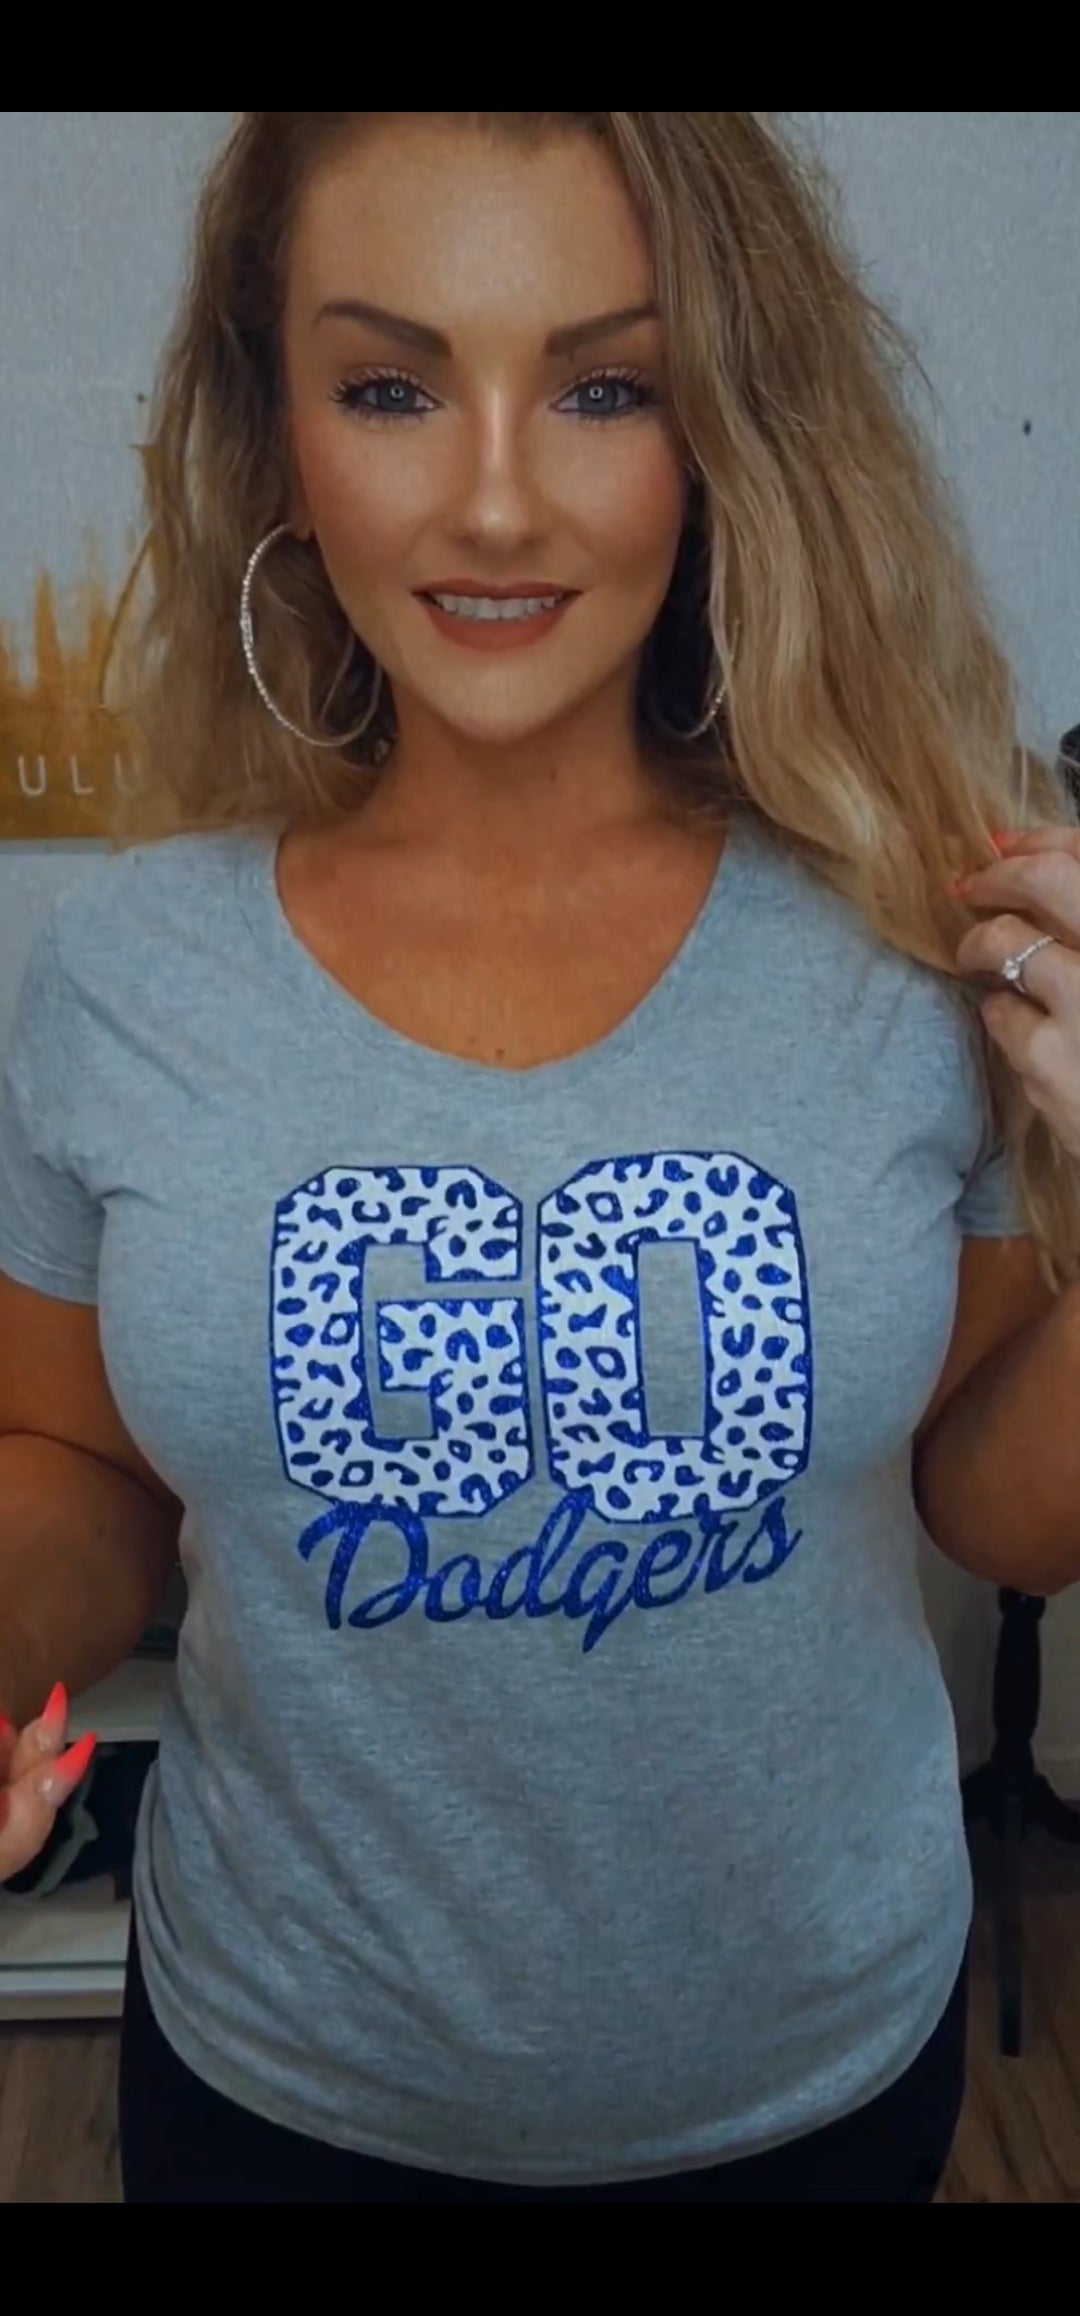 Lulu Grace Designs Los Angeles Leopard Print Glitter Shirt or Tank Top: Baseball Fan Gear & Apparel for Women Medium / Unisex Men’s Tee